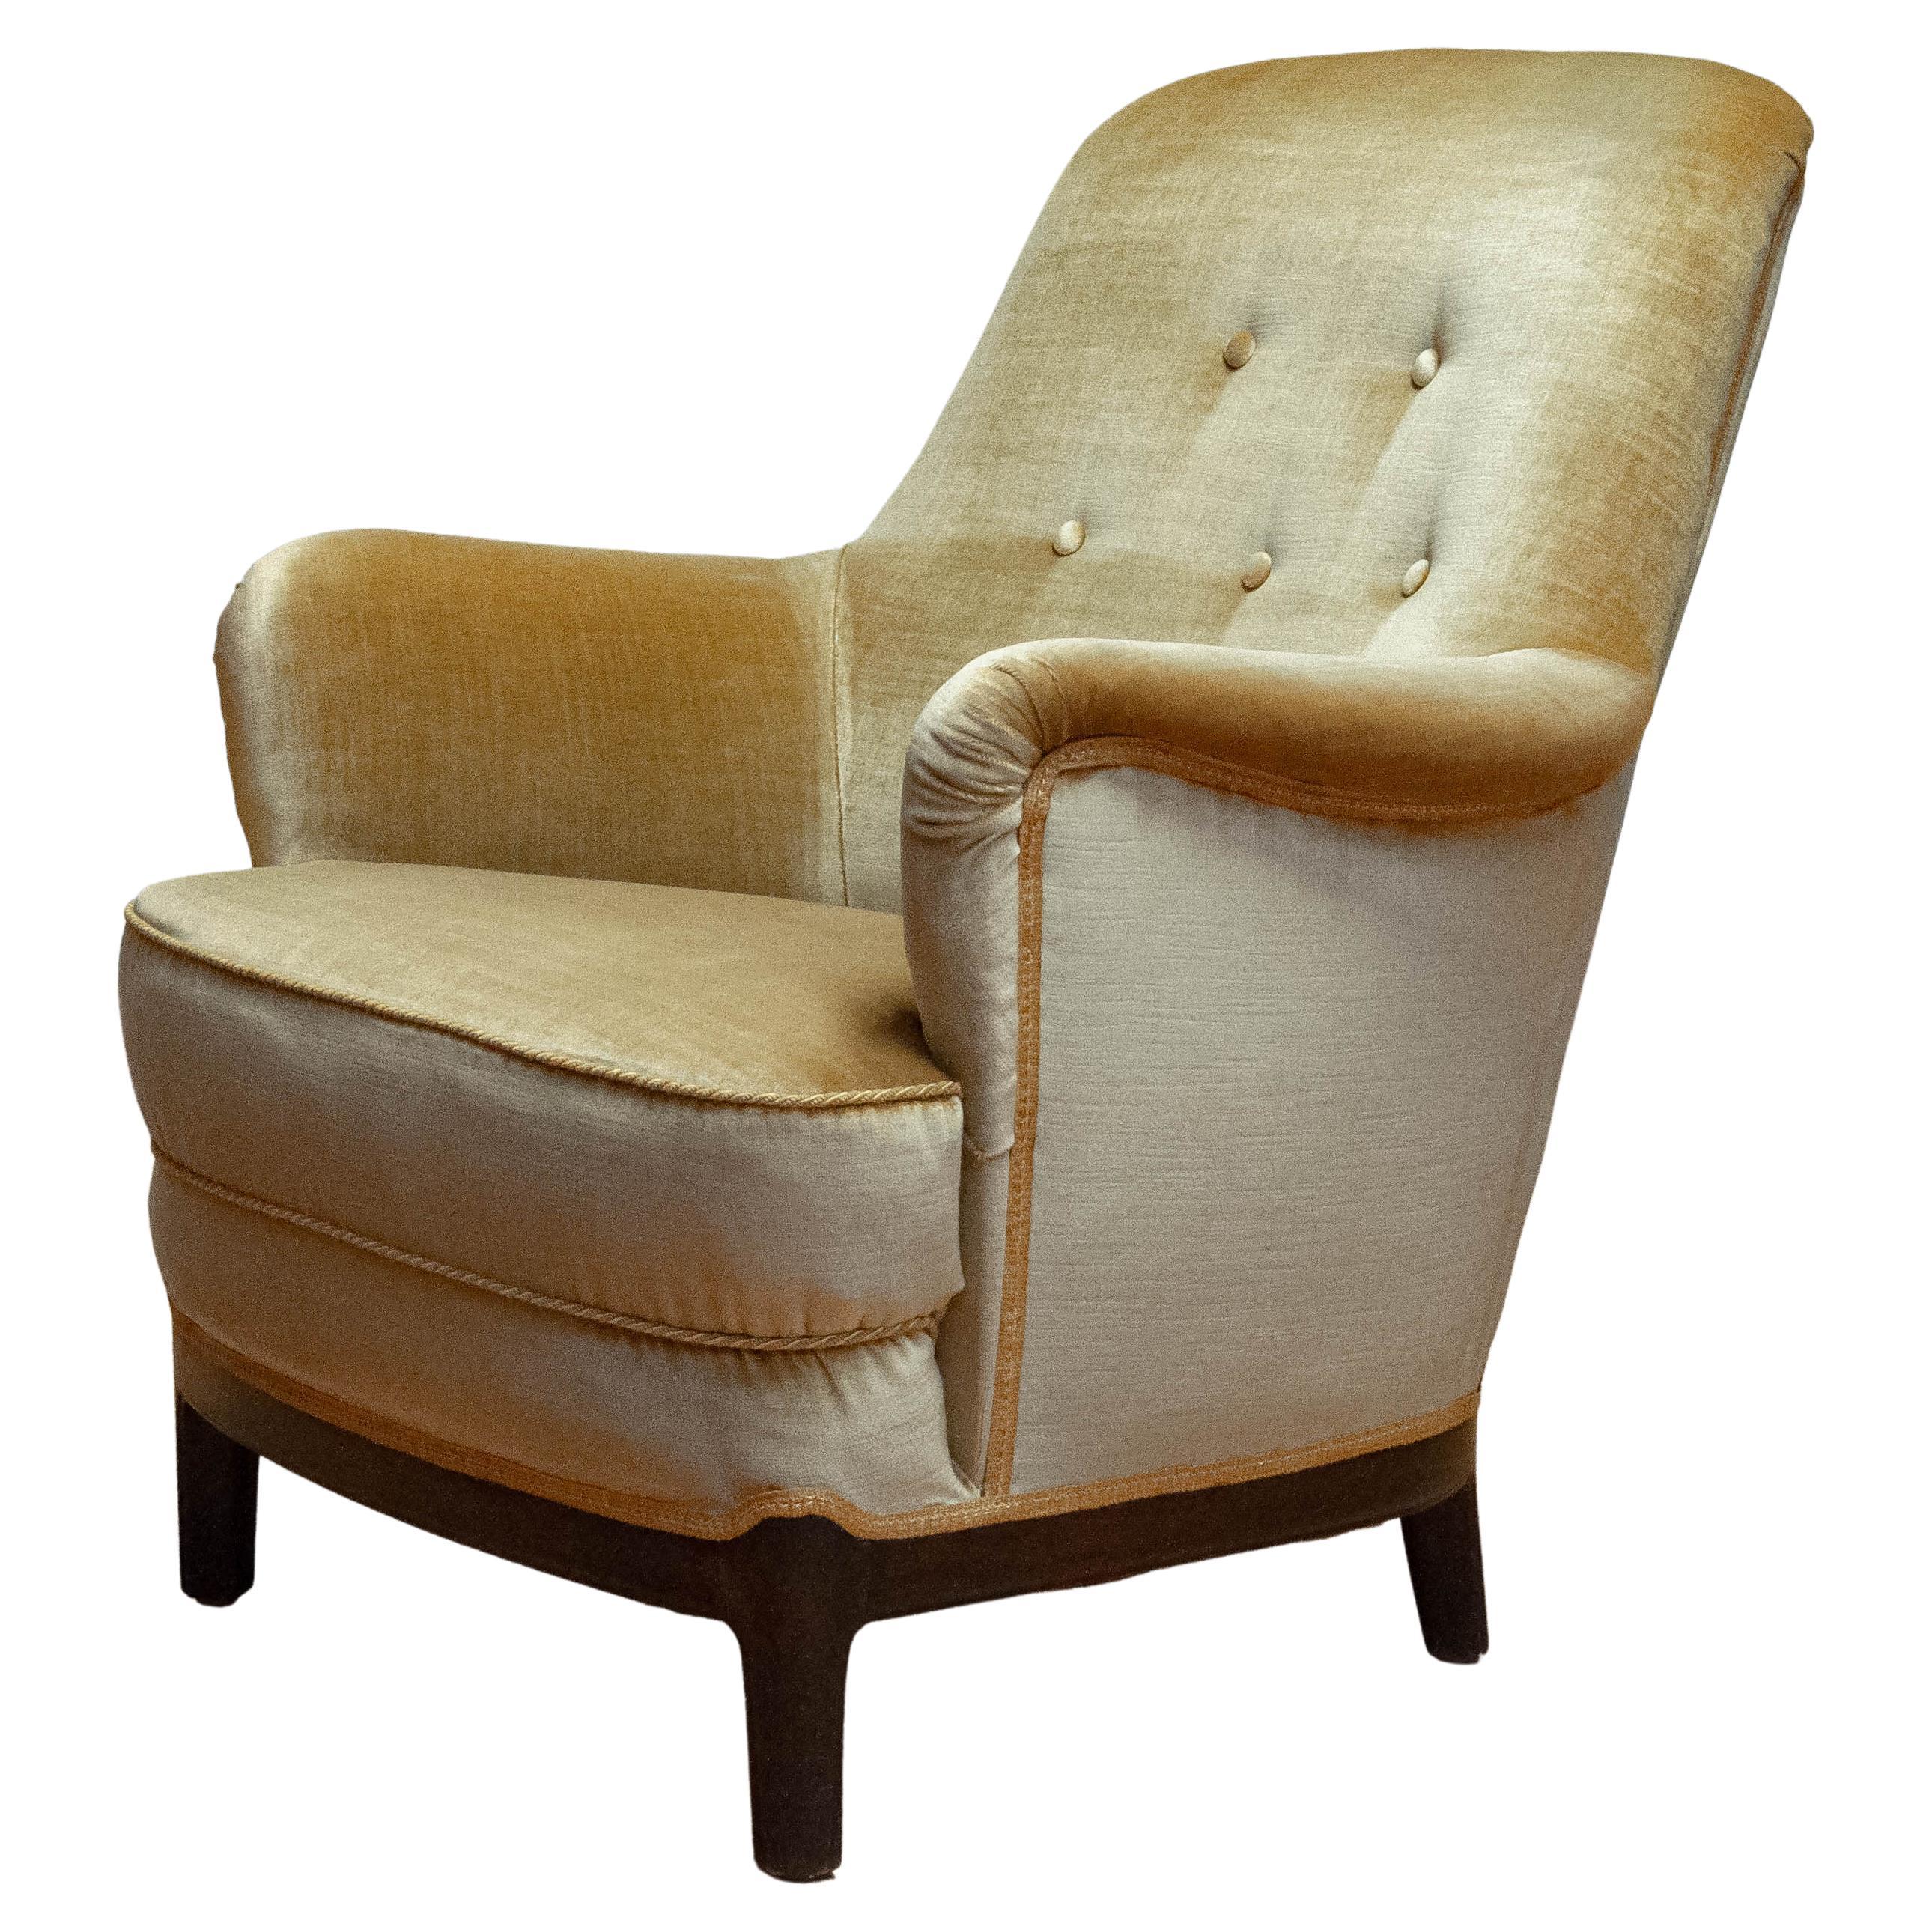 1940s Gold Colored Velvet Upholstered Lounge Chair By Carl Malmsten Sweden